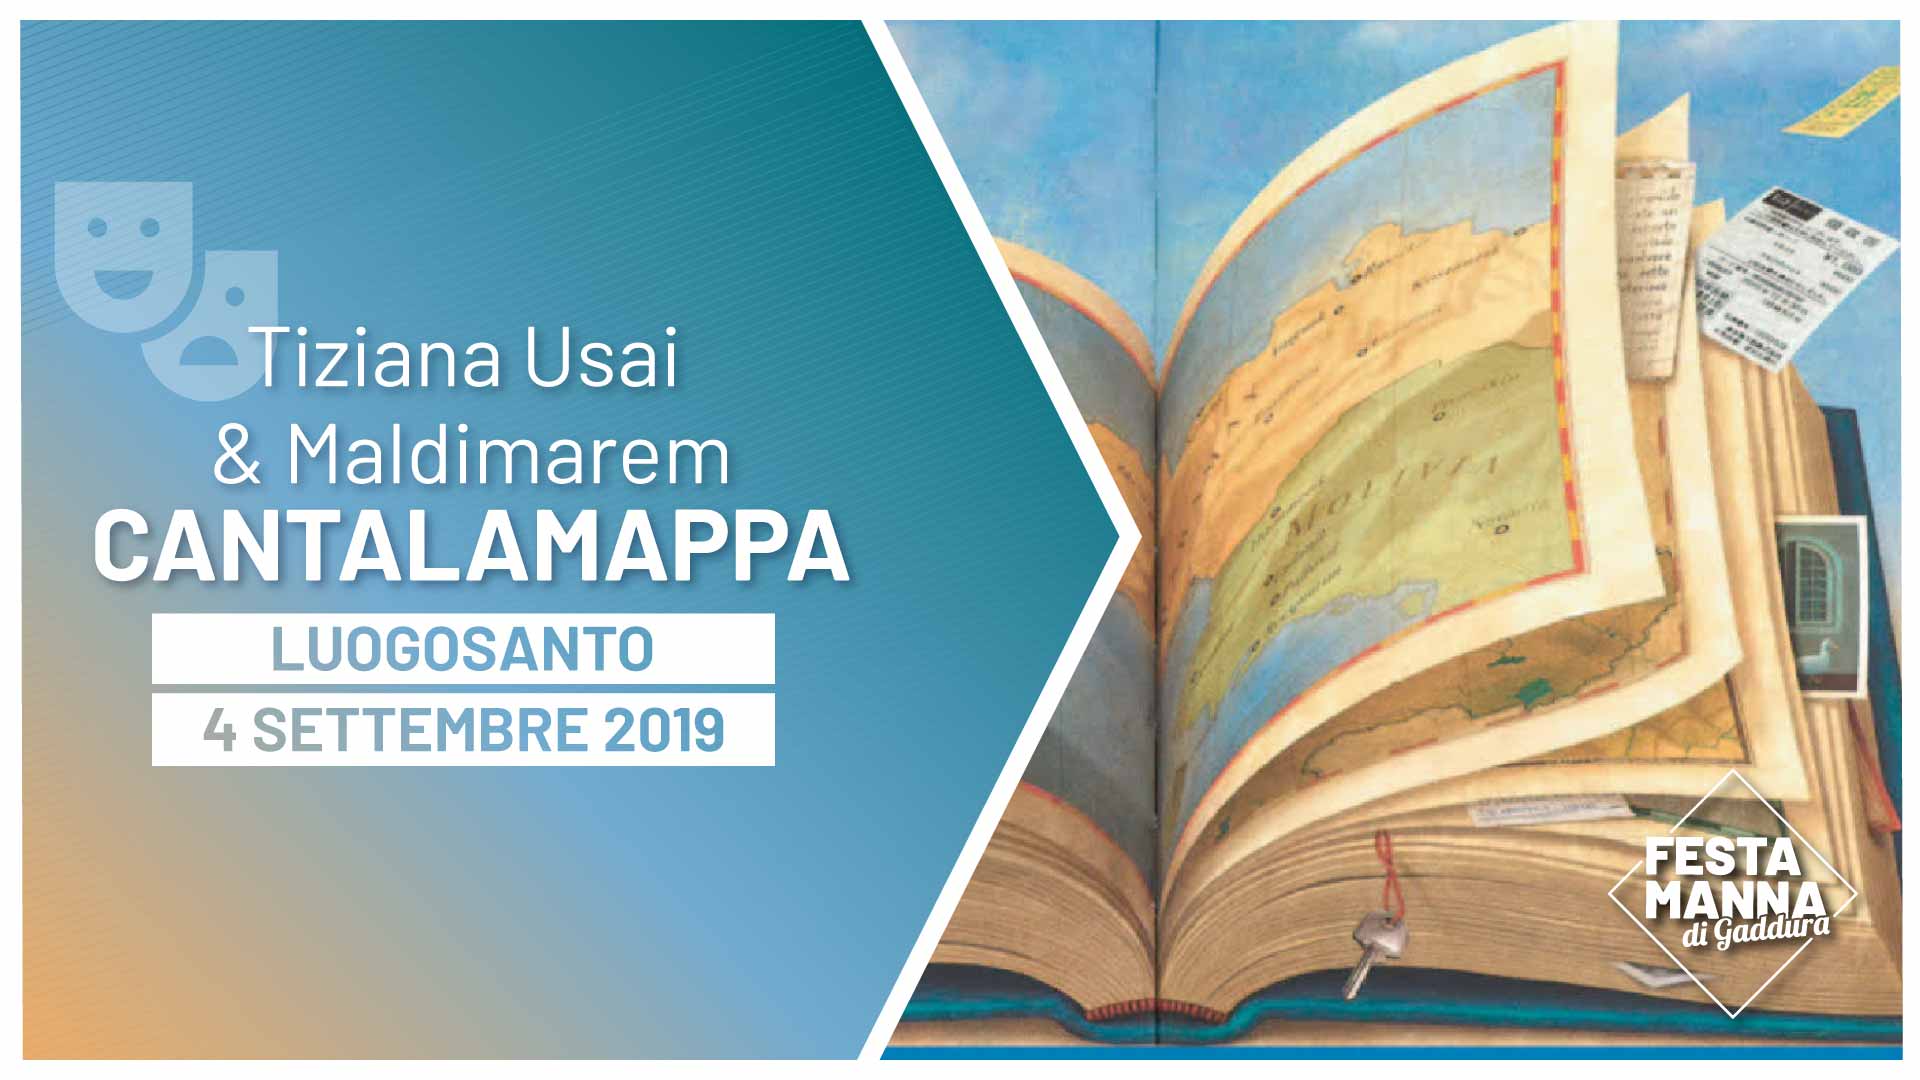 “Cantalamappa”, Reiselesungen für Kinder von Tiziana Usai und Maldimarem | Festa Manna di Gaddura 2019